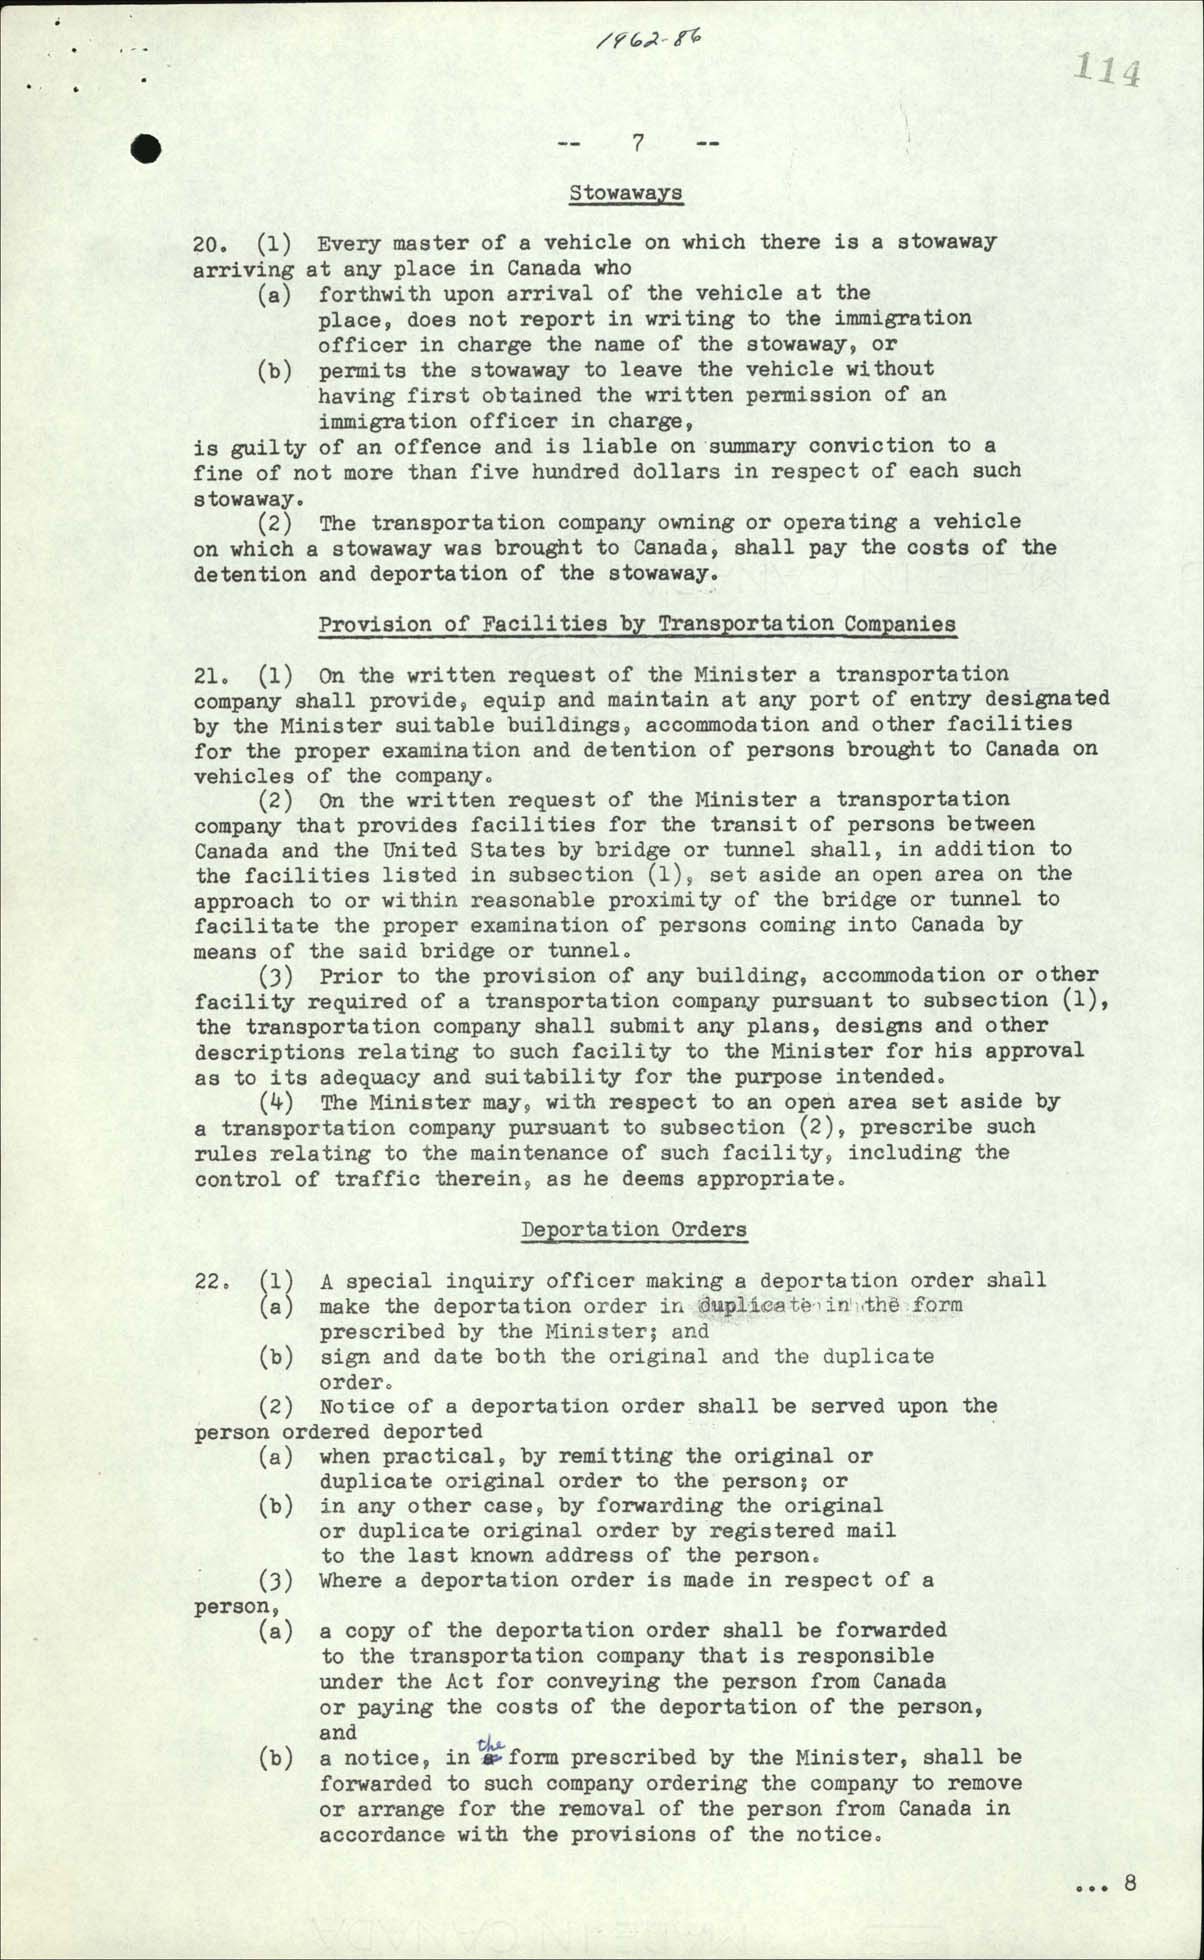 Règlement sur l’immigration, Décret du Conseil CP 1962-86, 1962